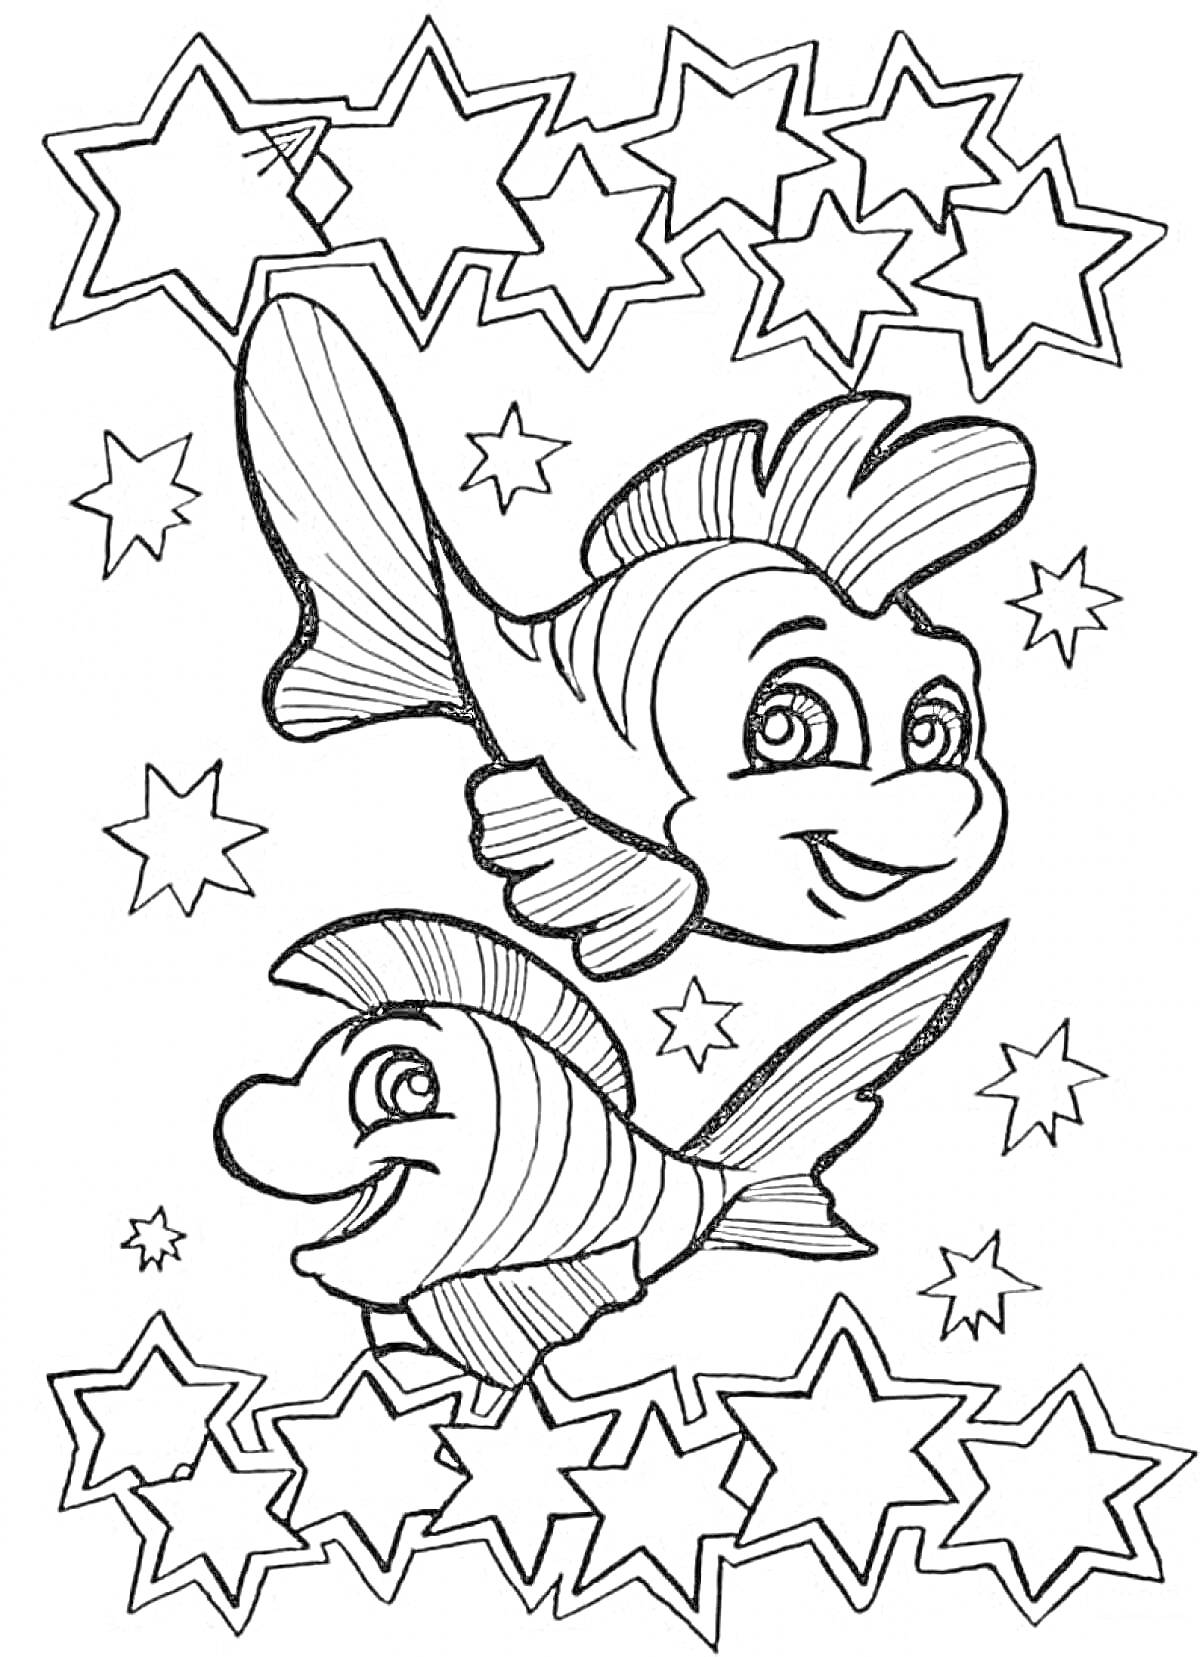 Раскраска Рыбы среди звезд (две рыбы и множество звезд)